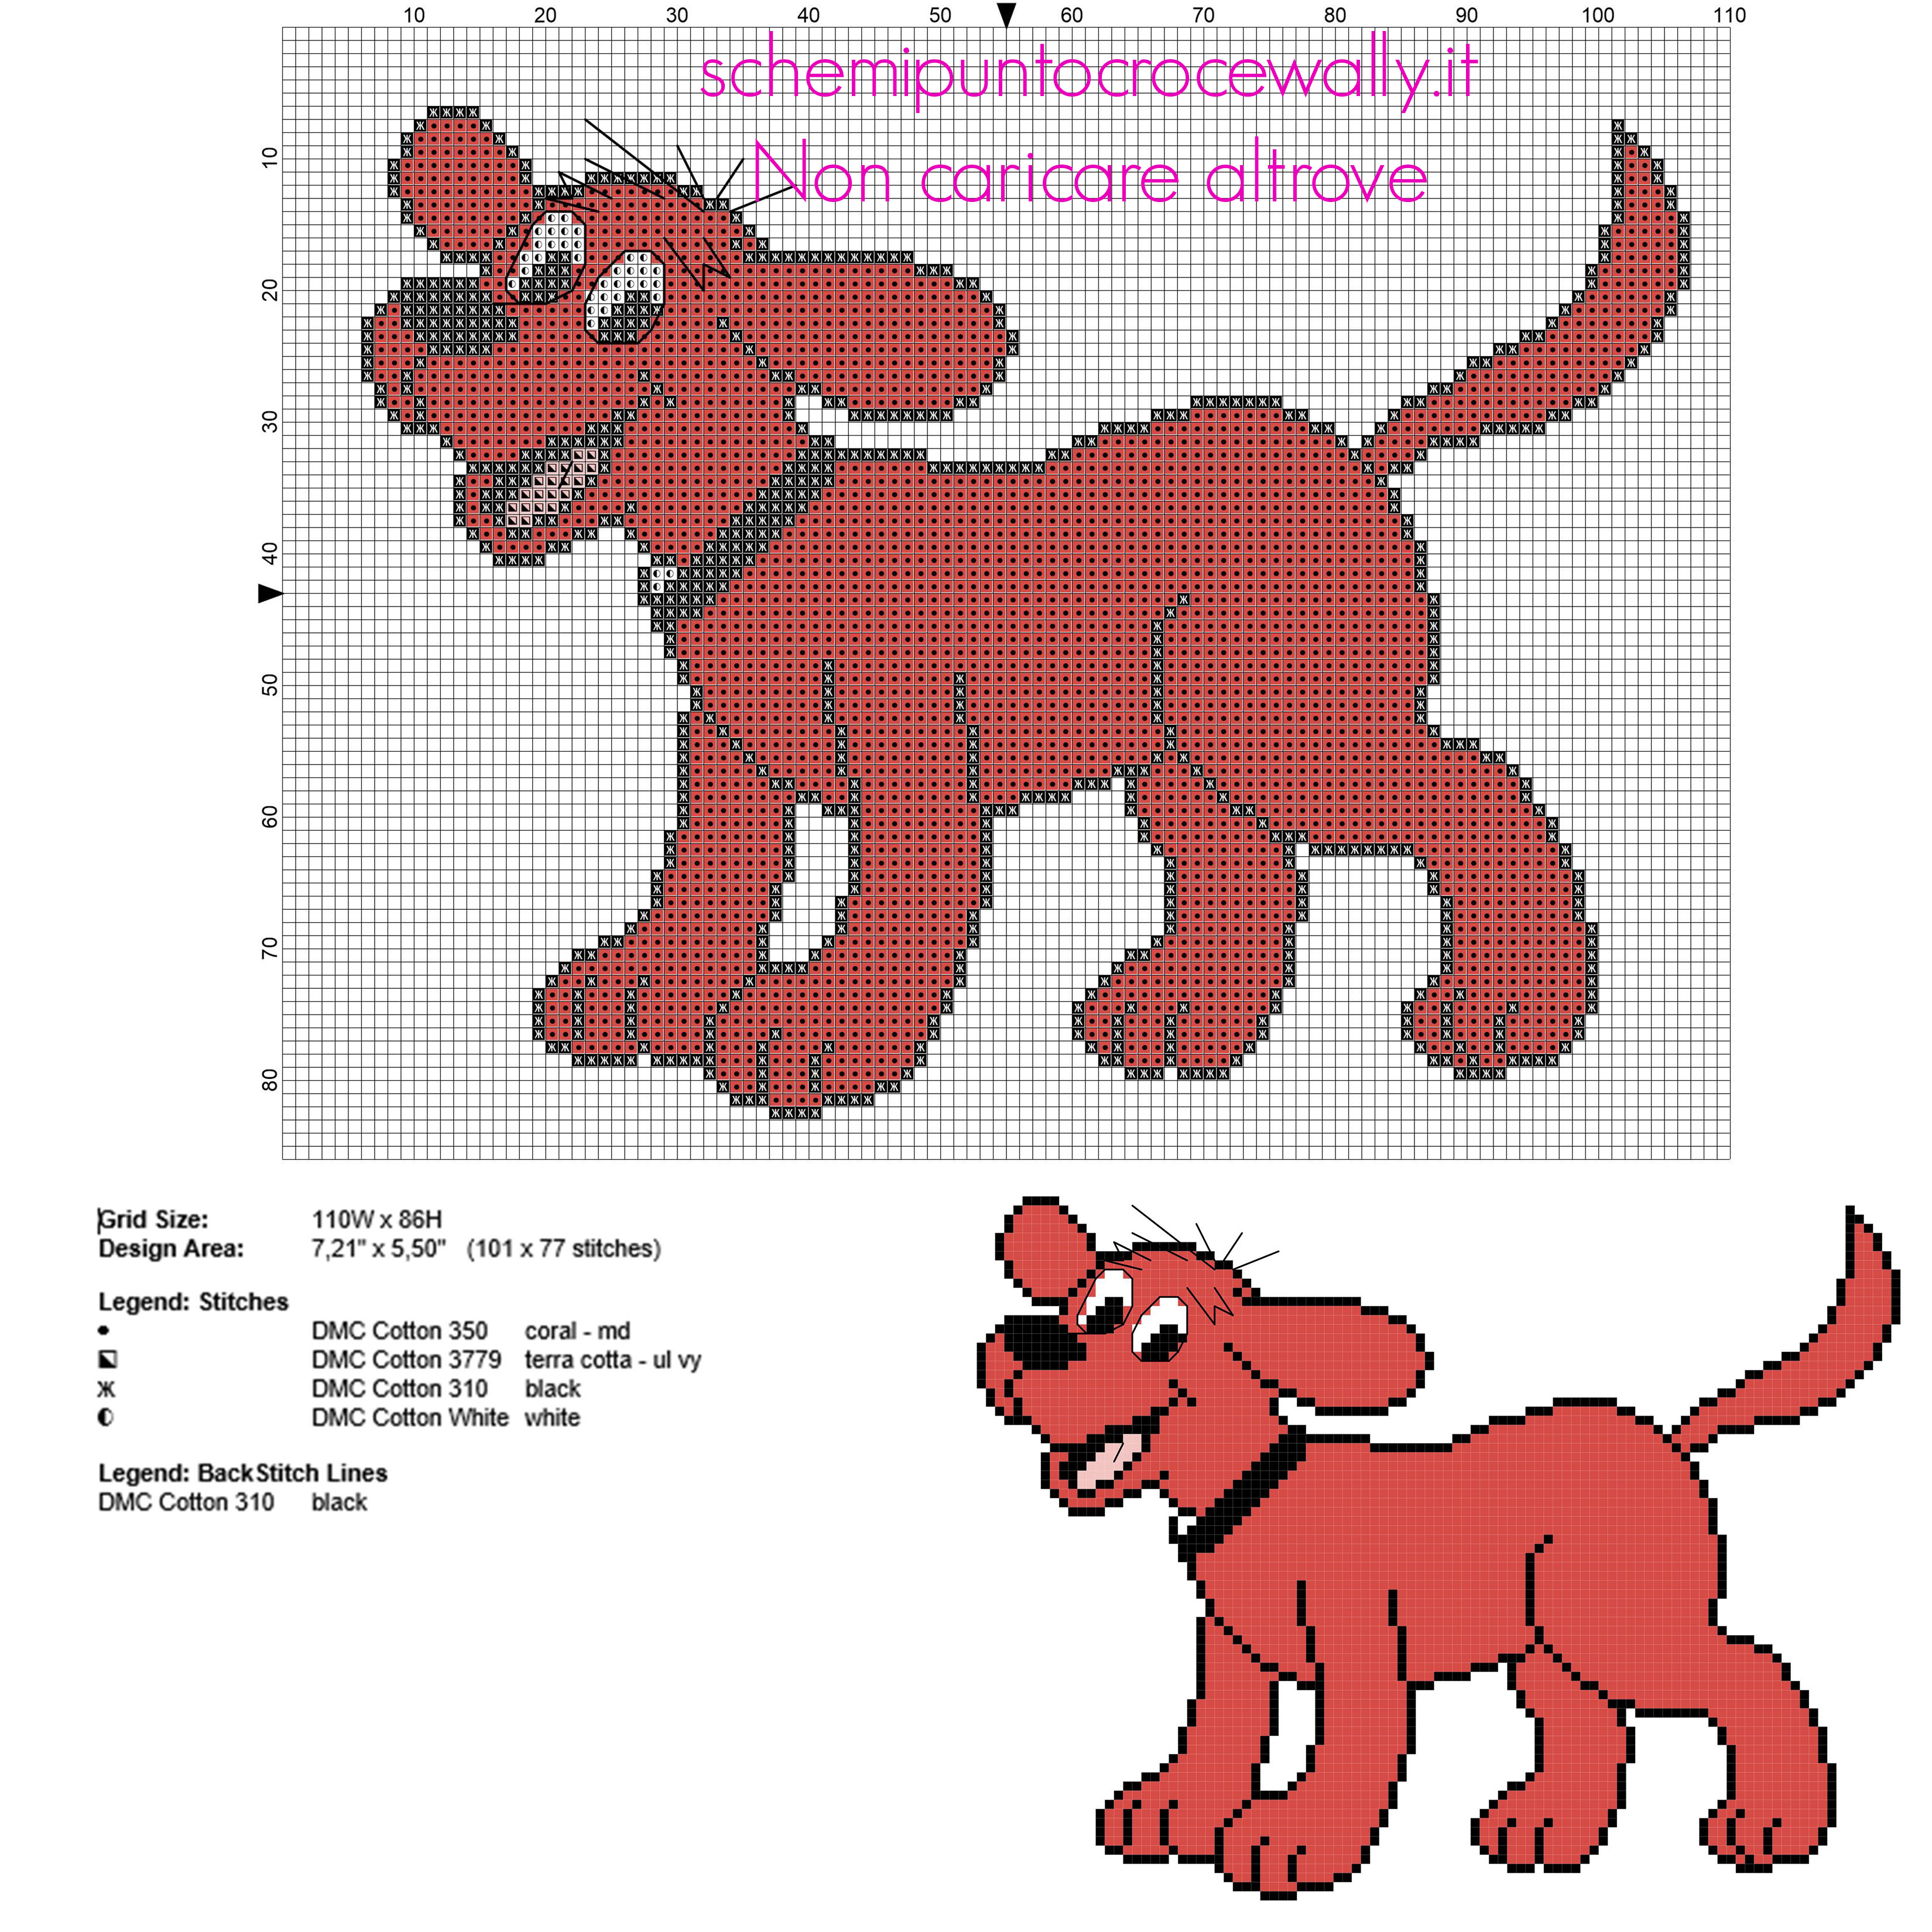 Il cane dei cartoni animati Clifford schema punto croce gratis in circa 100 crocette